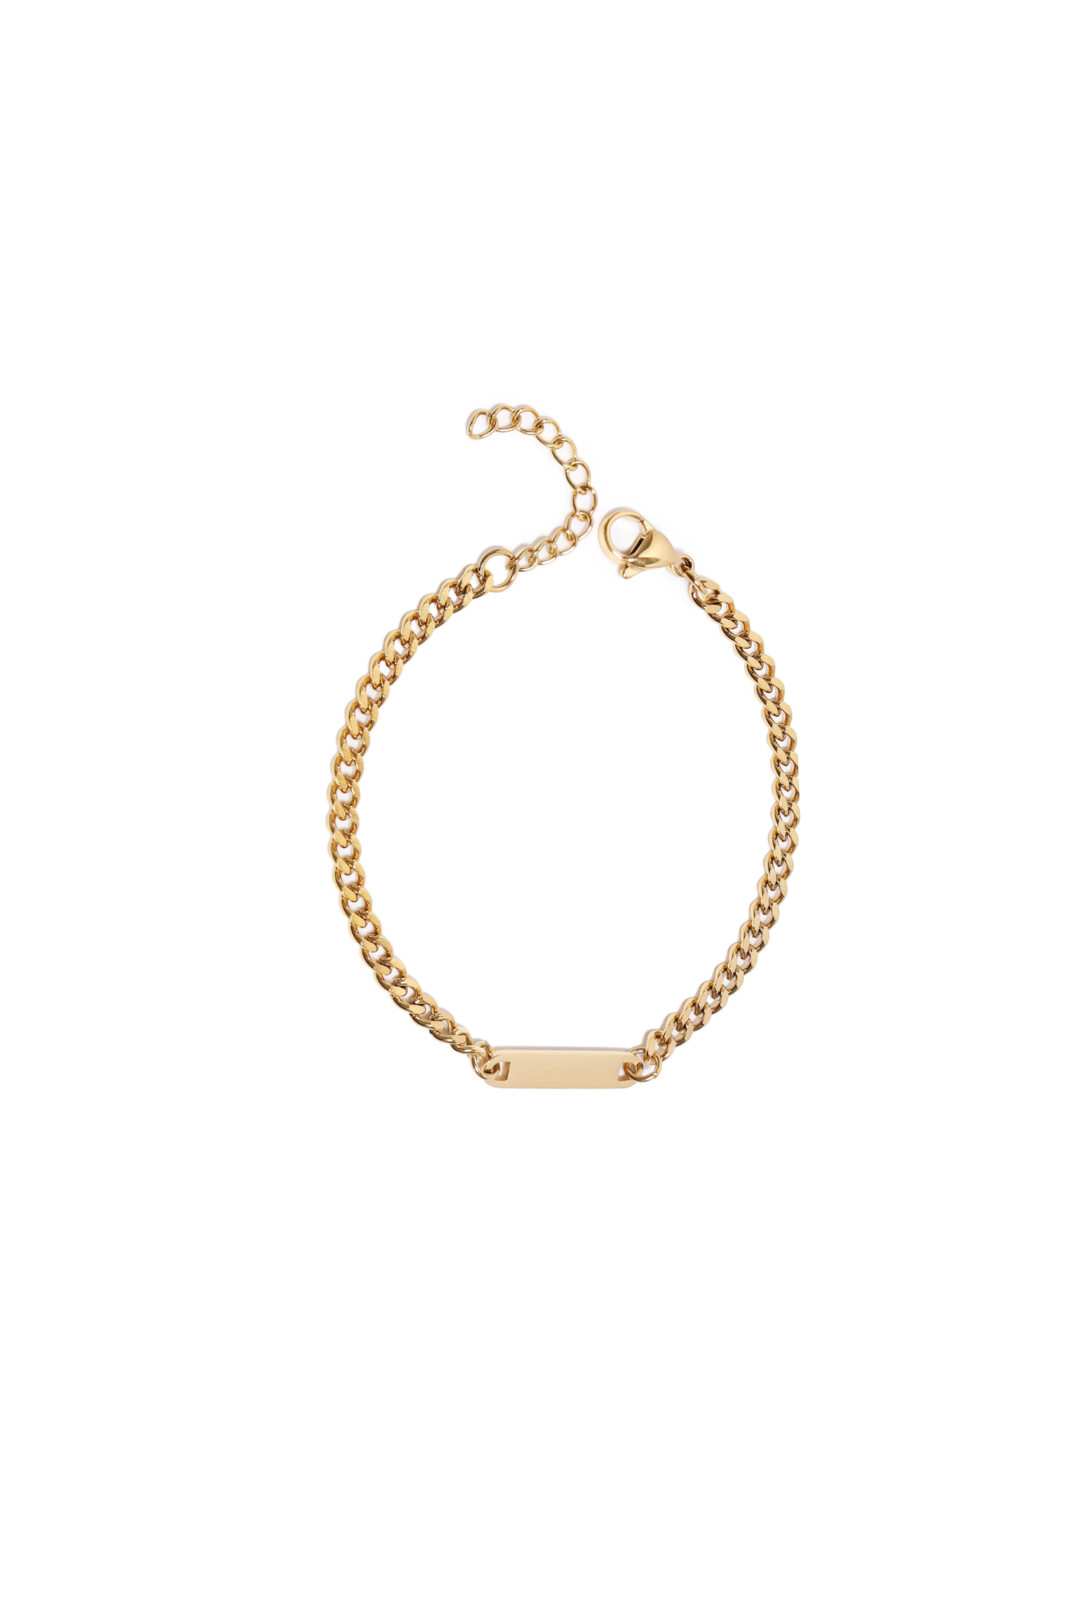 Gold Curb Chain Charm Bracelet - Engravable